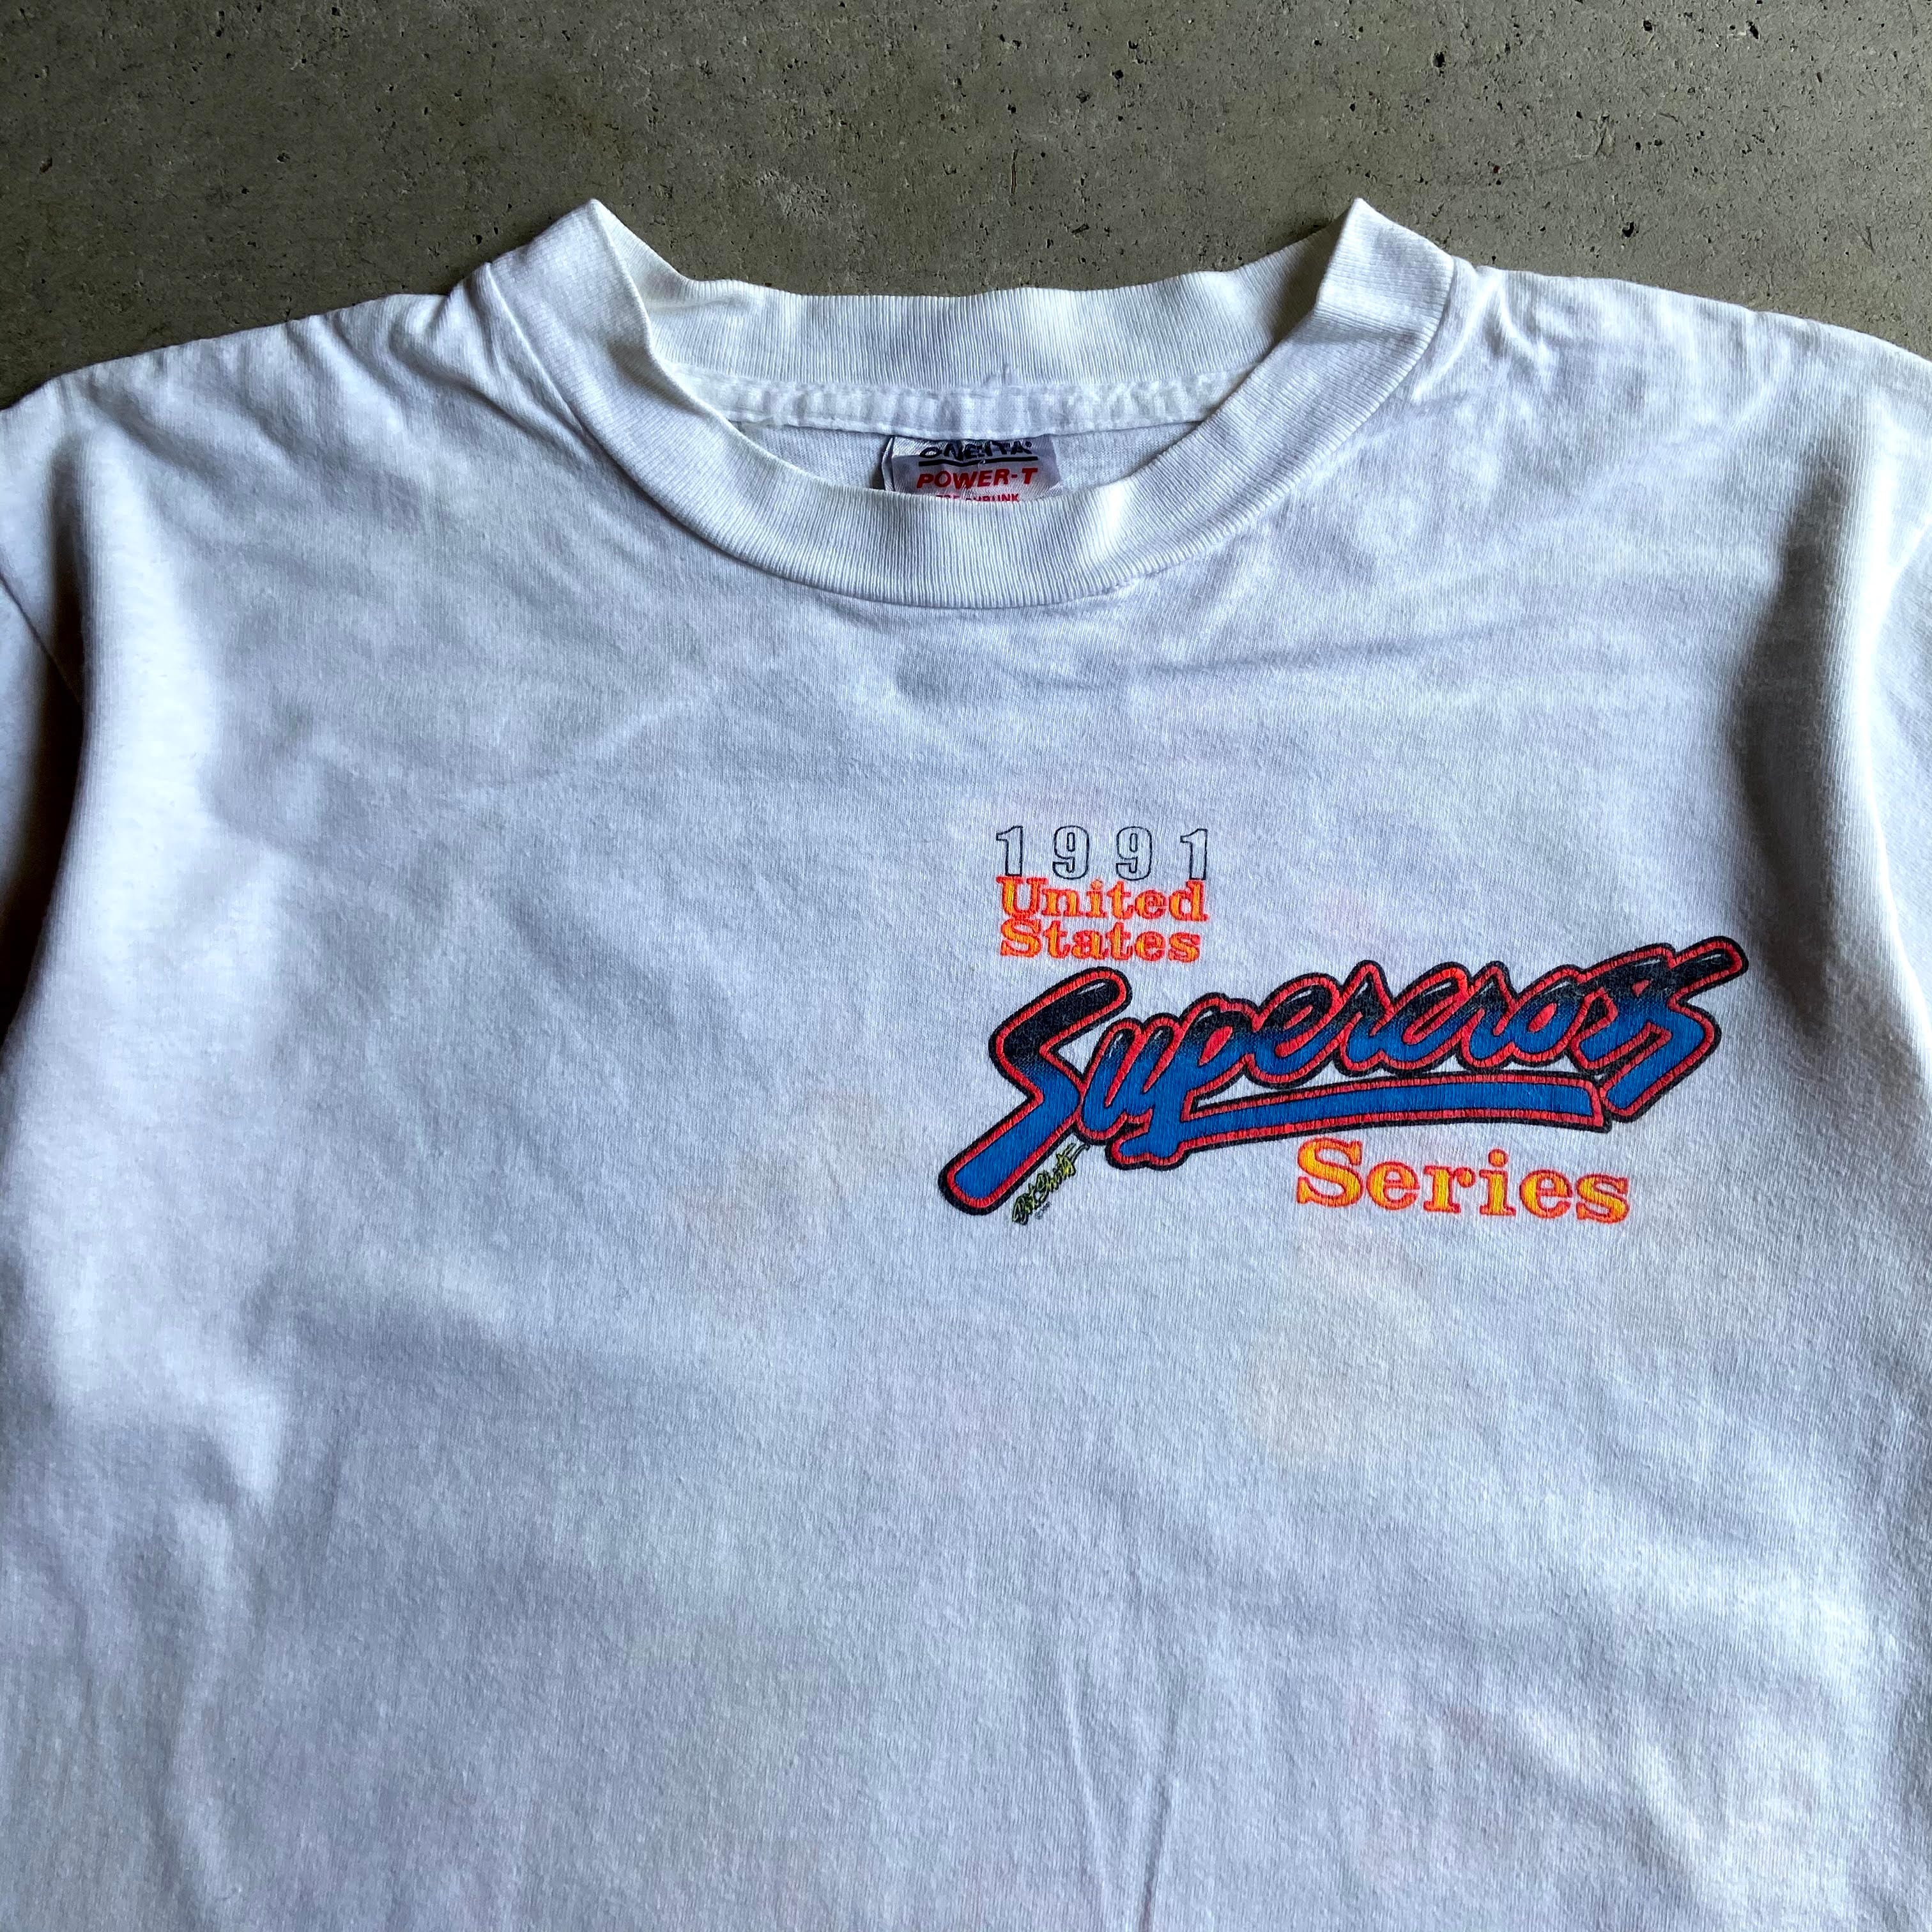 90年代 SUPERCROSS SERIES 1991 バイク レーシングTシャツ 